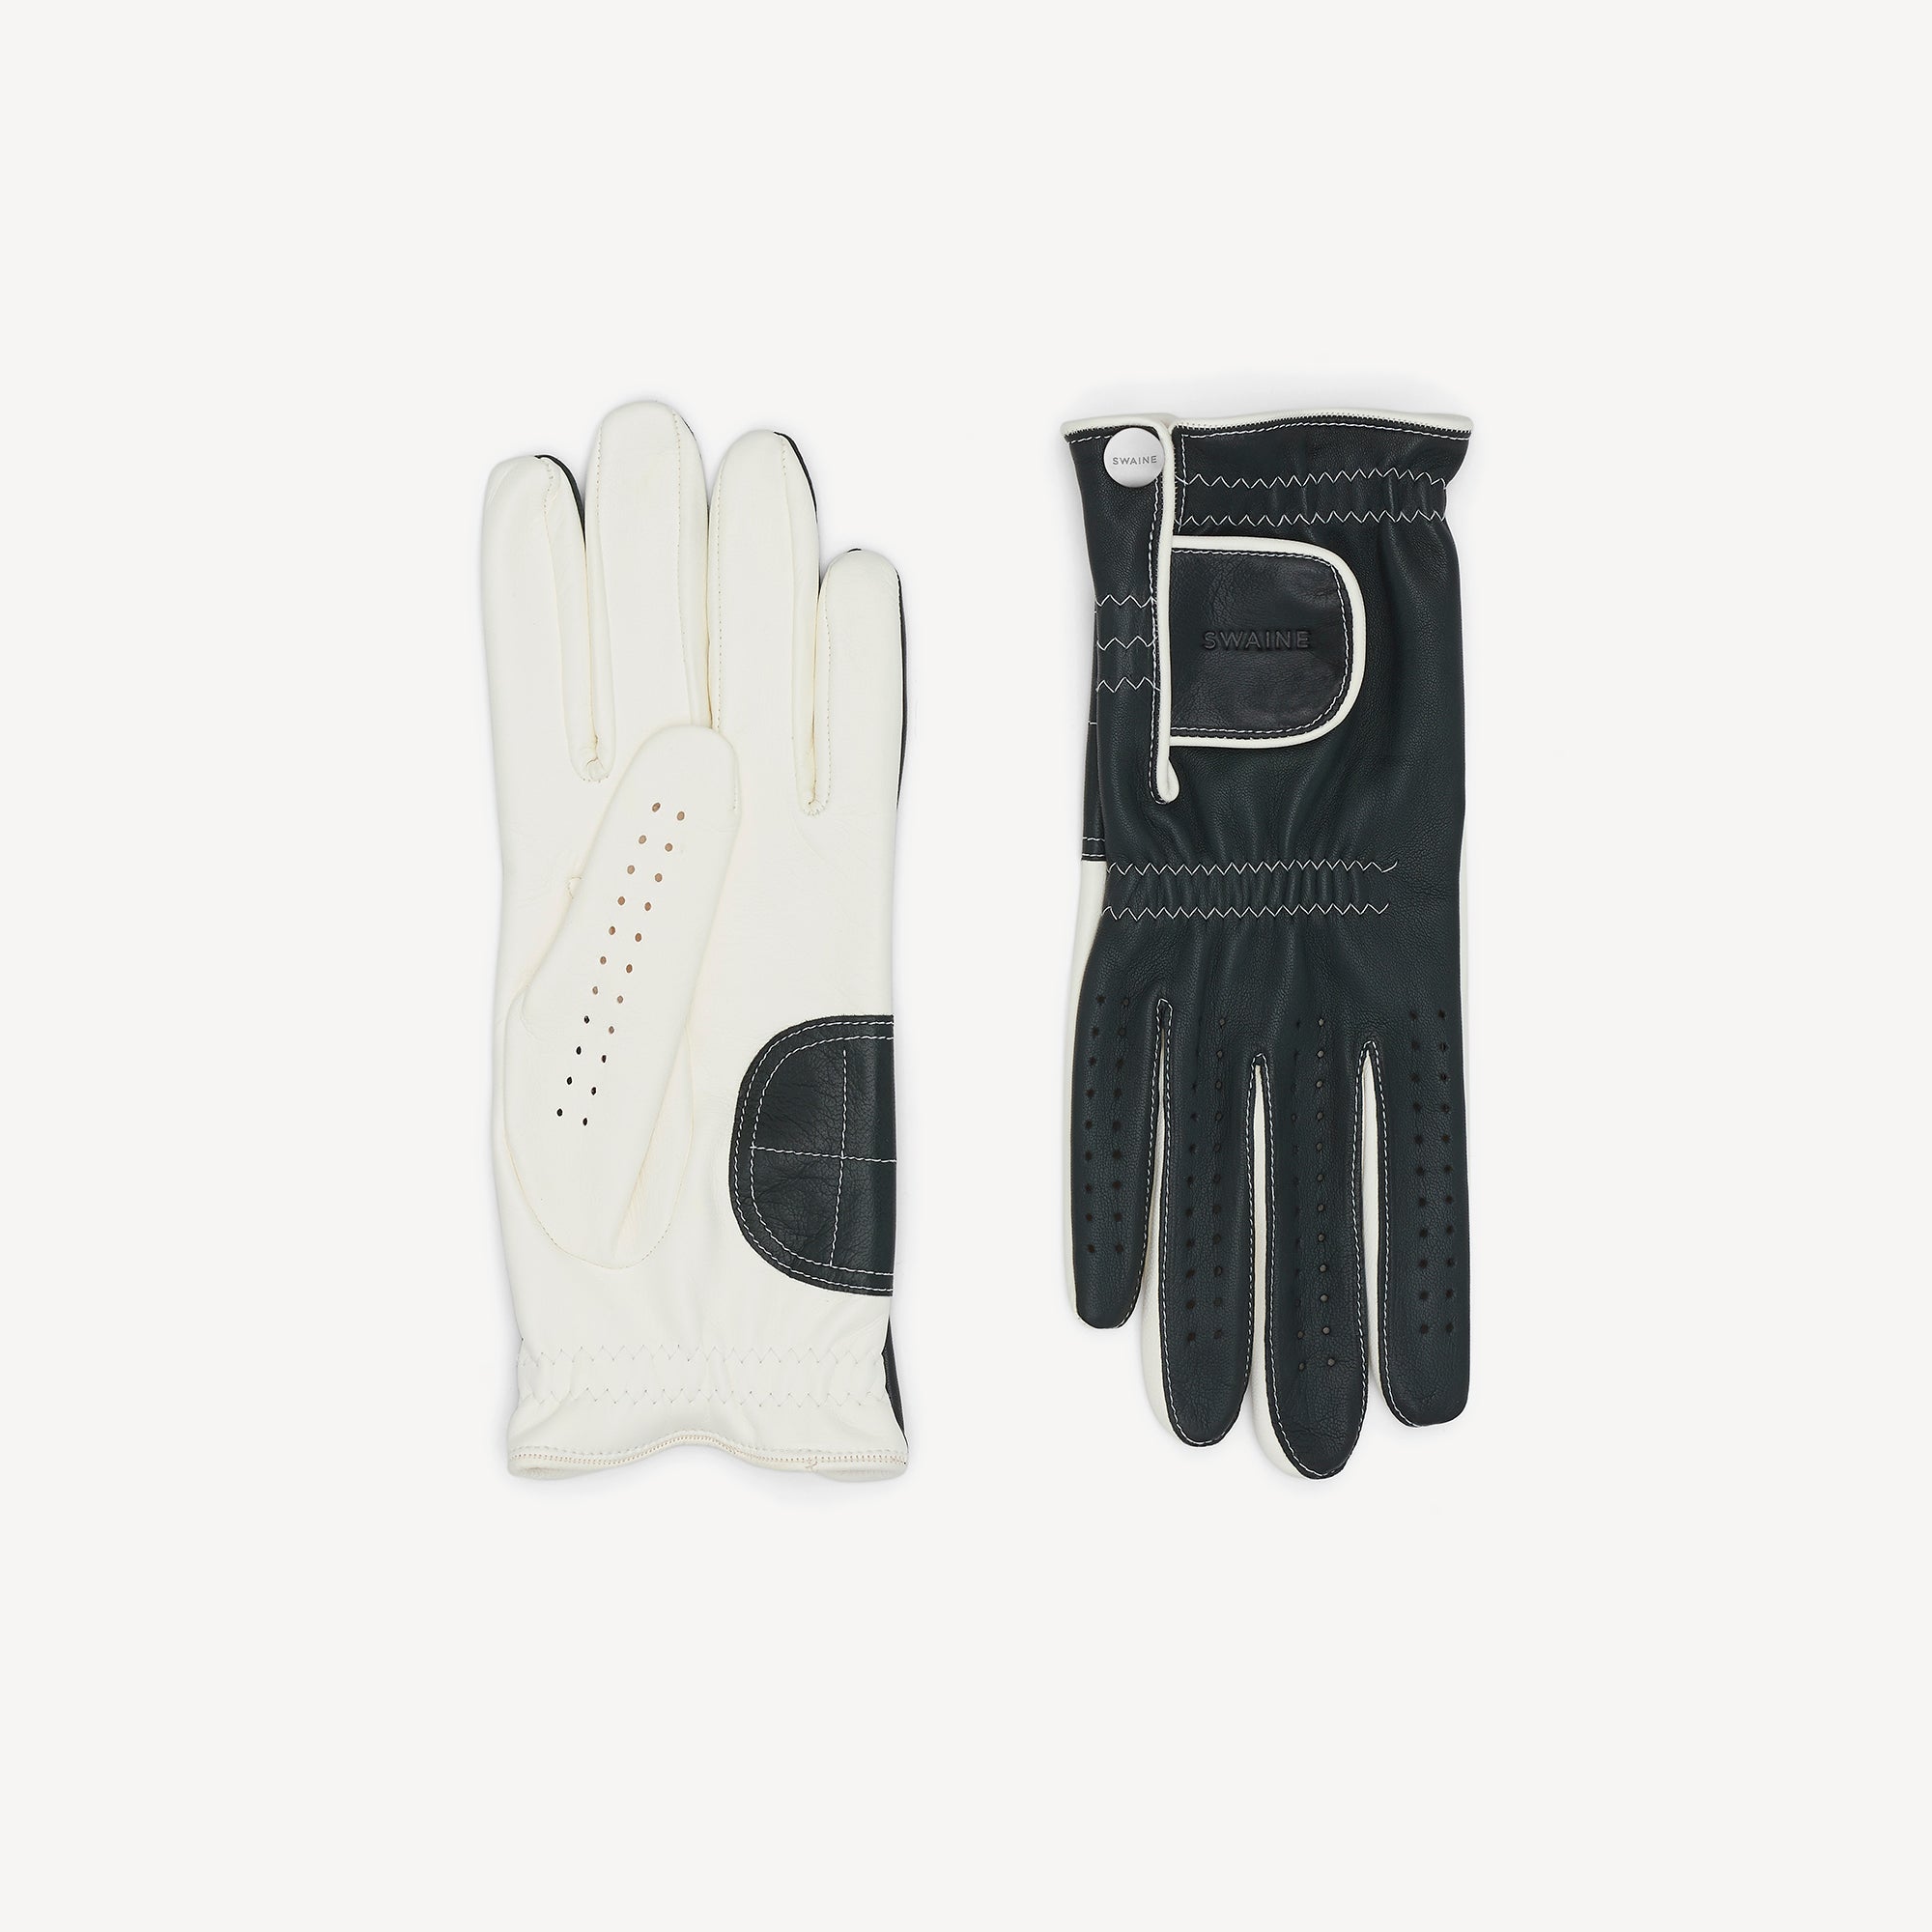 Men’s Golf Gloves - Green & White - Swaine